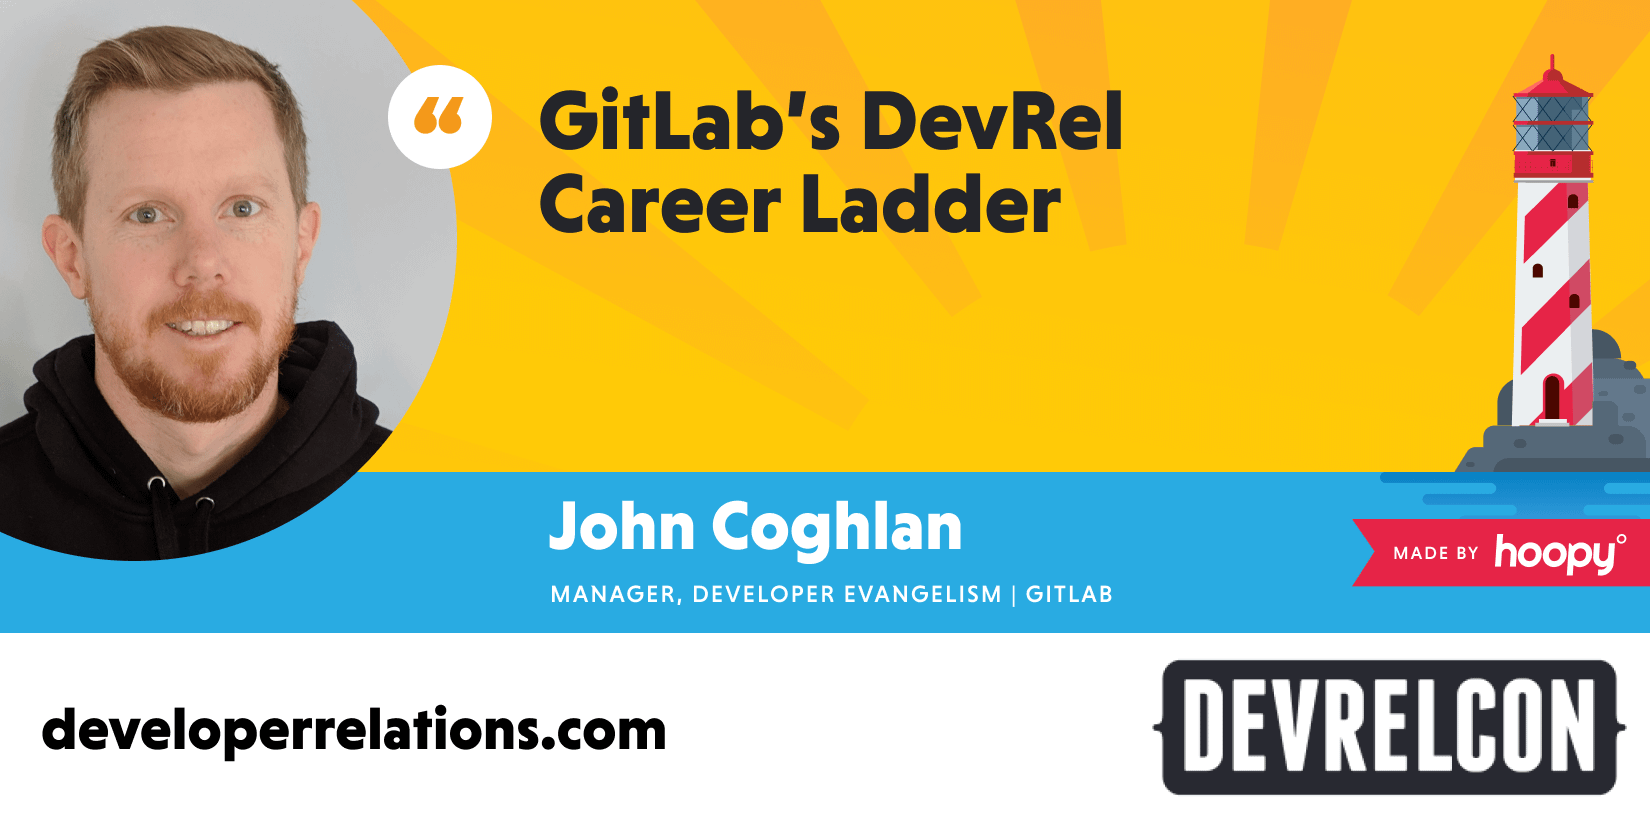 The GitLab DevRel career ladder